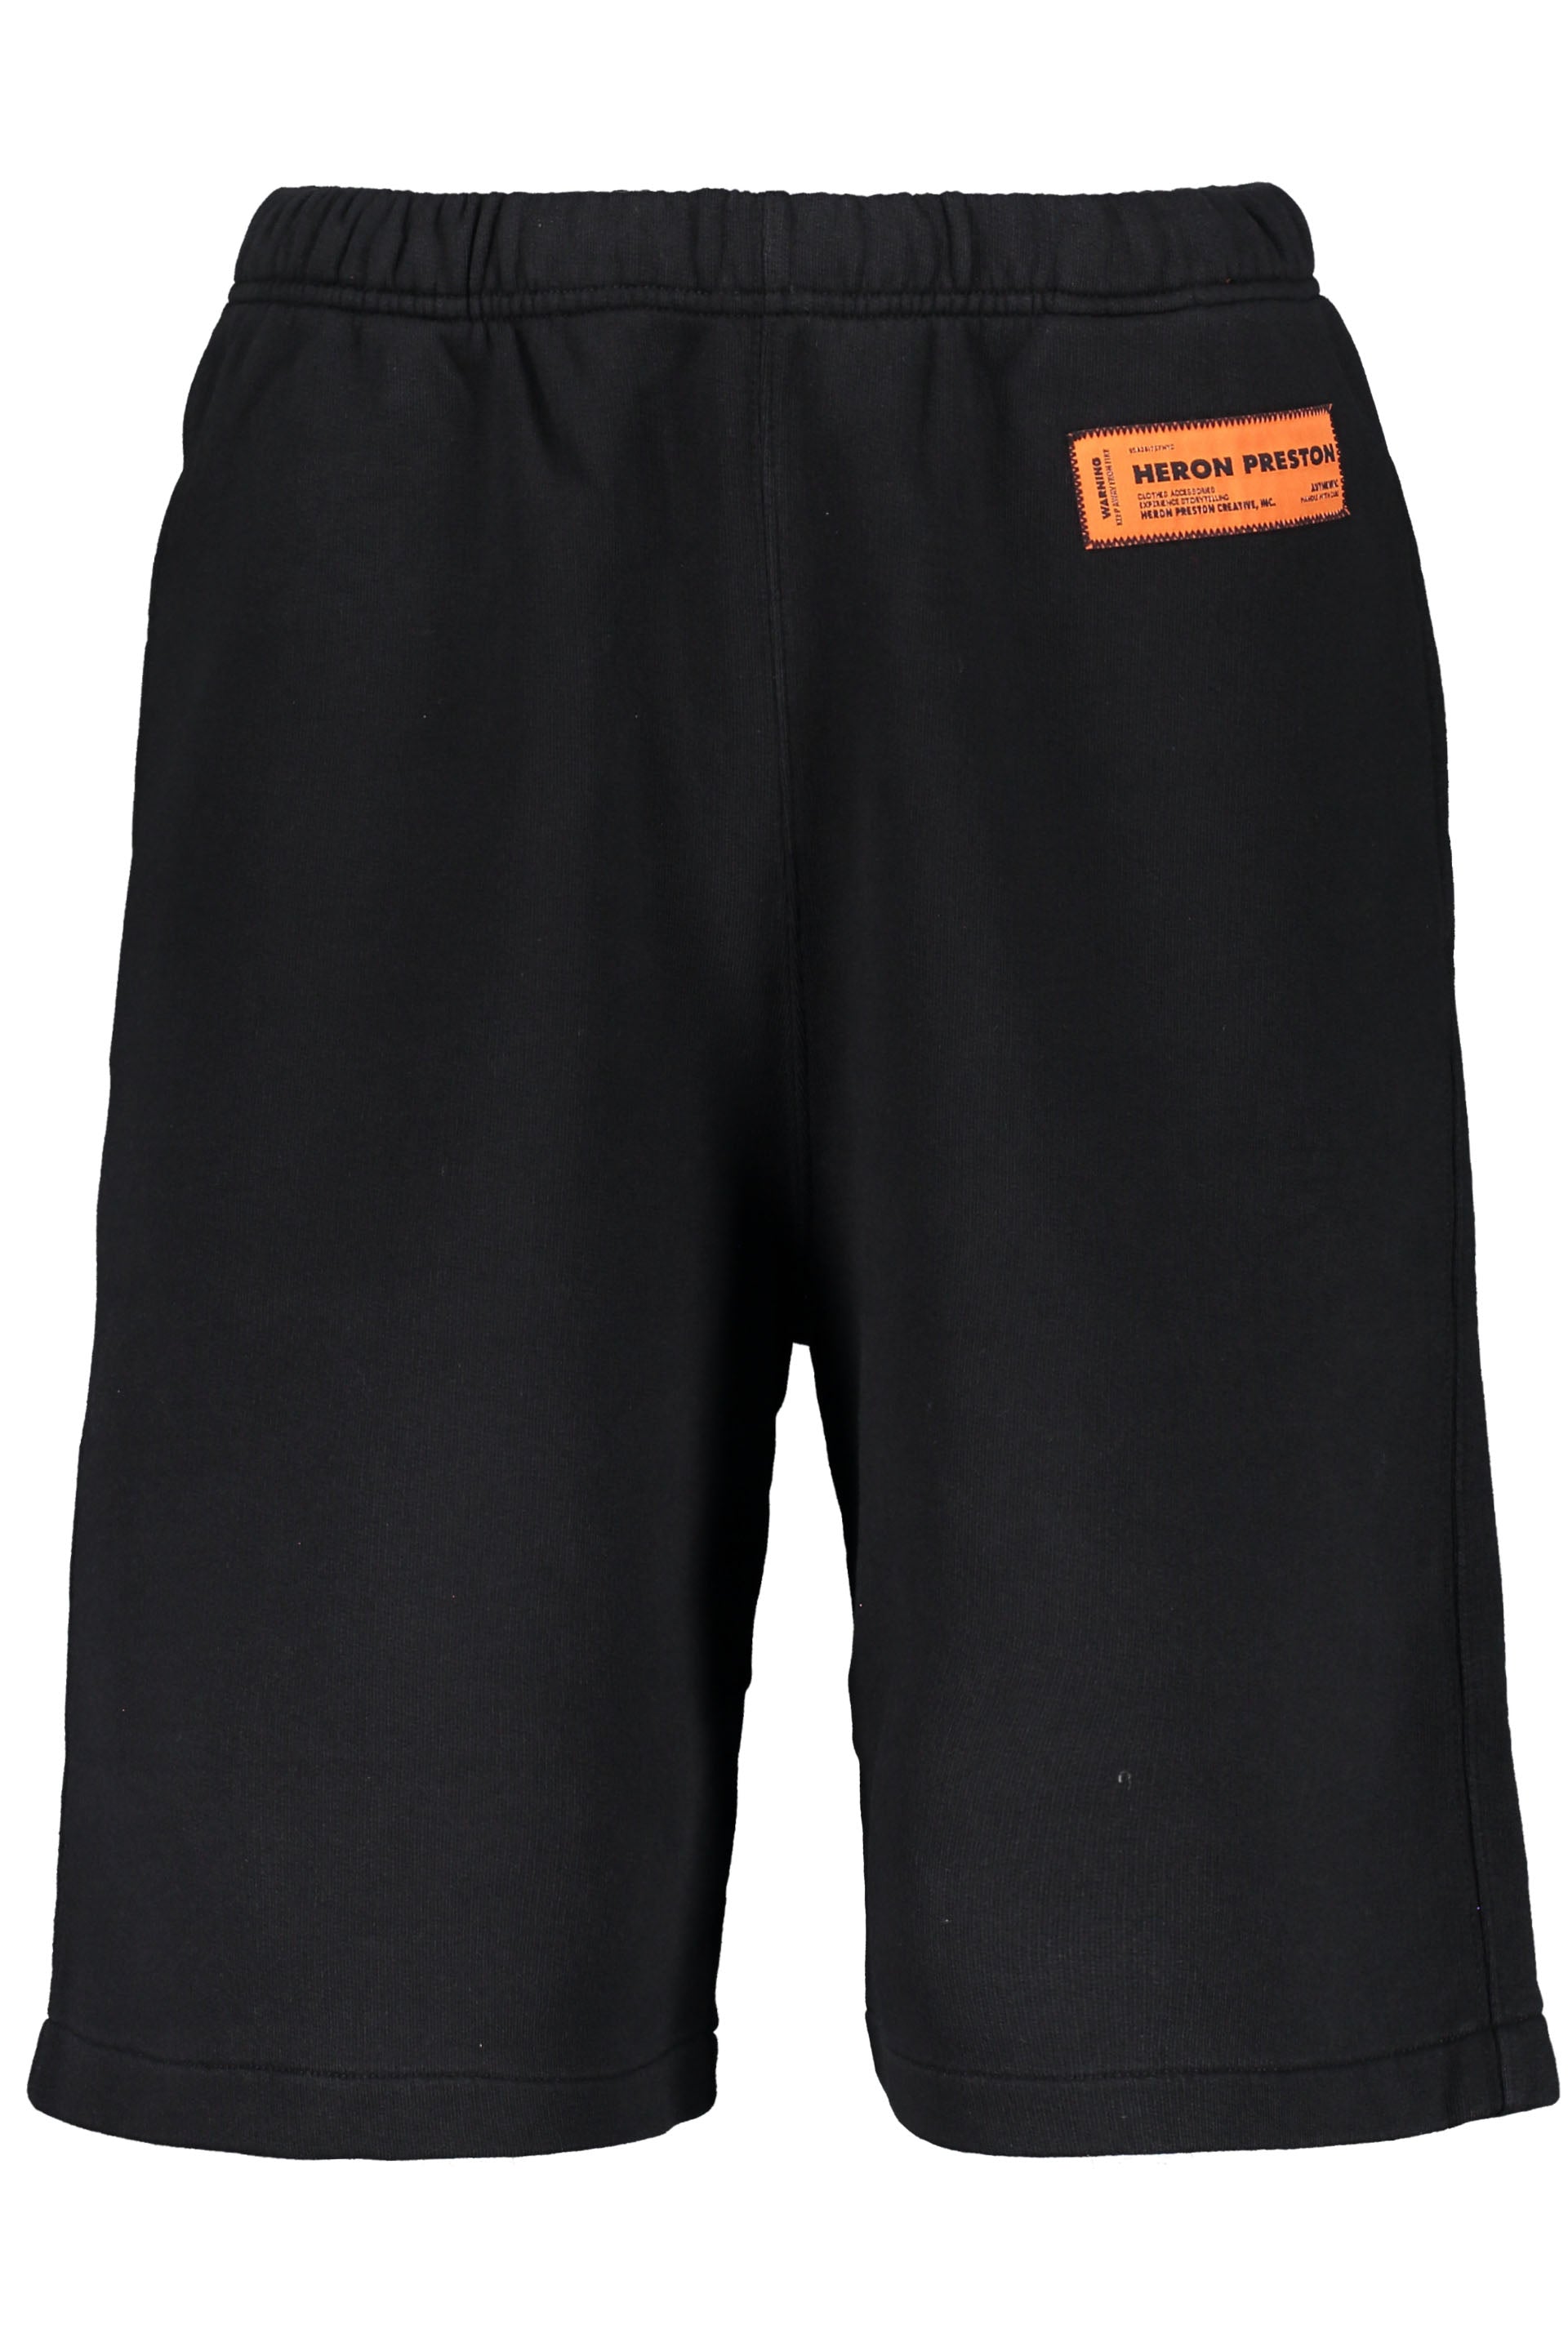 Cotton bermuda shorts-Heron Preston-OUTLET-SALE-L-ARCHIVIST